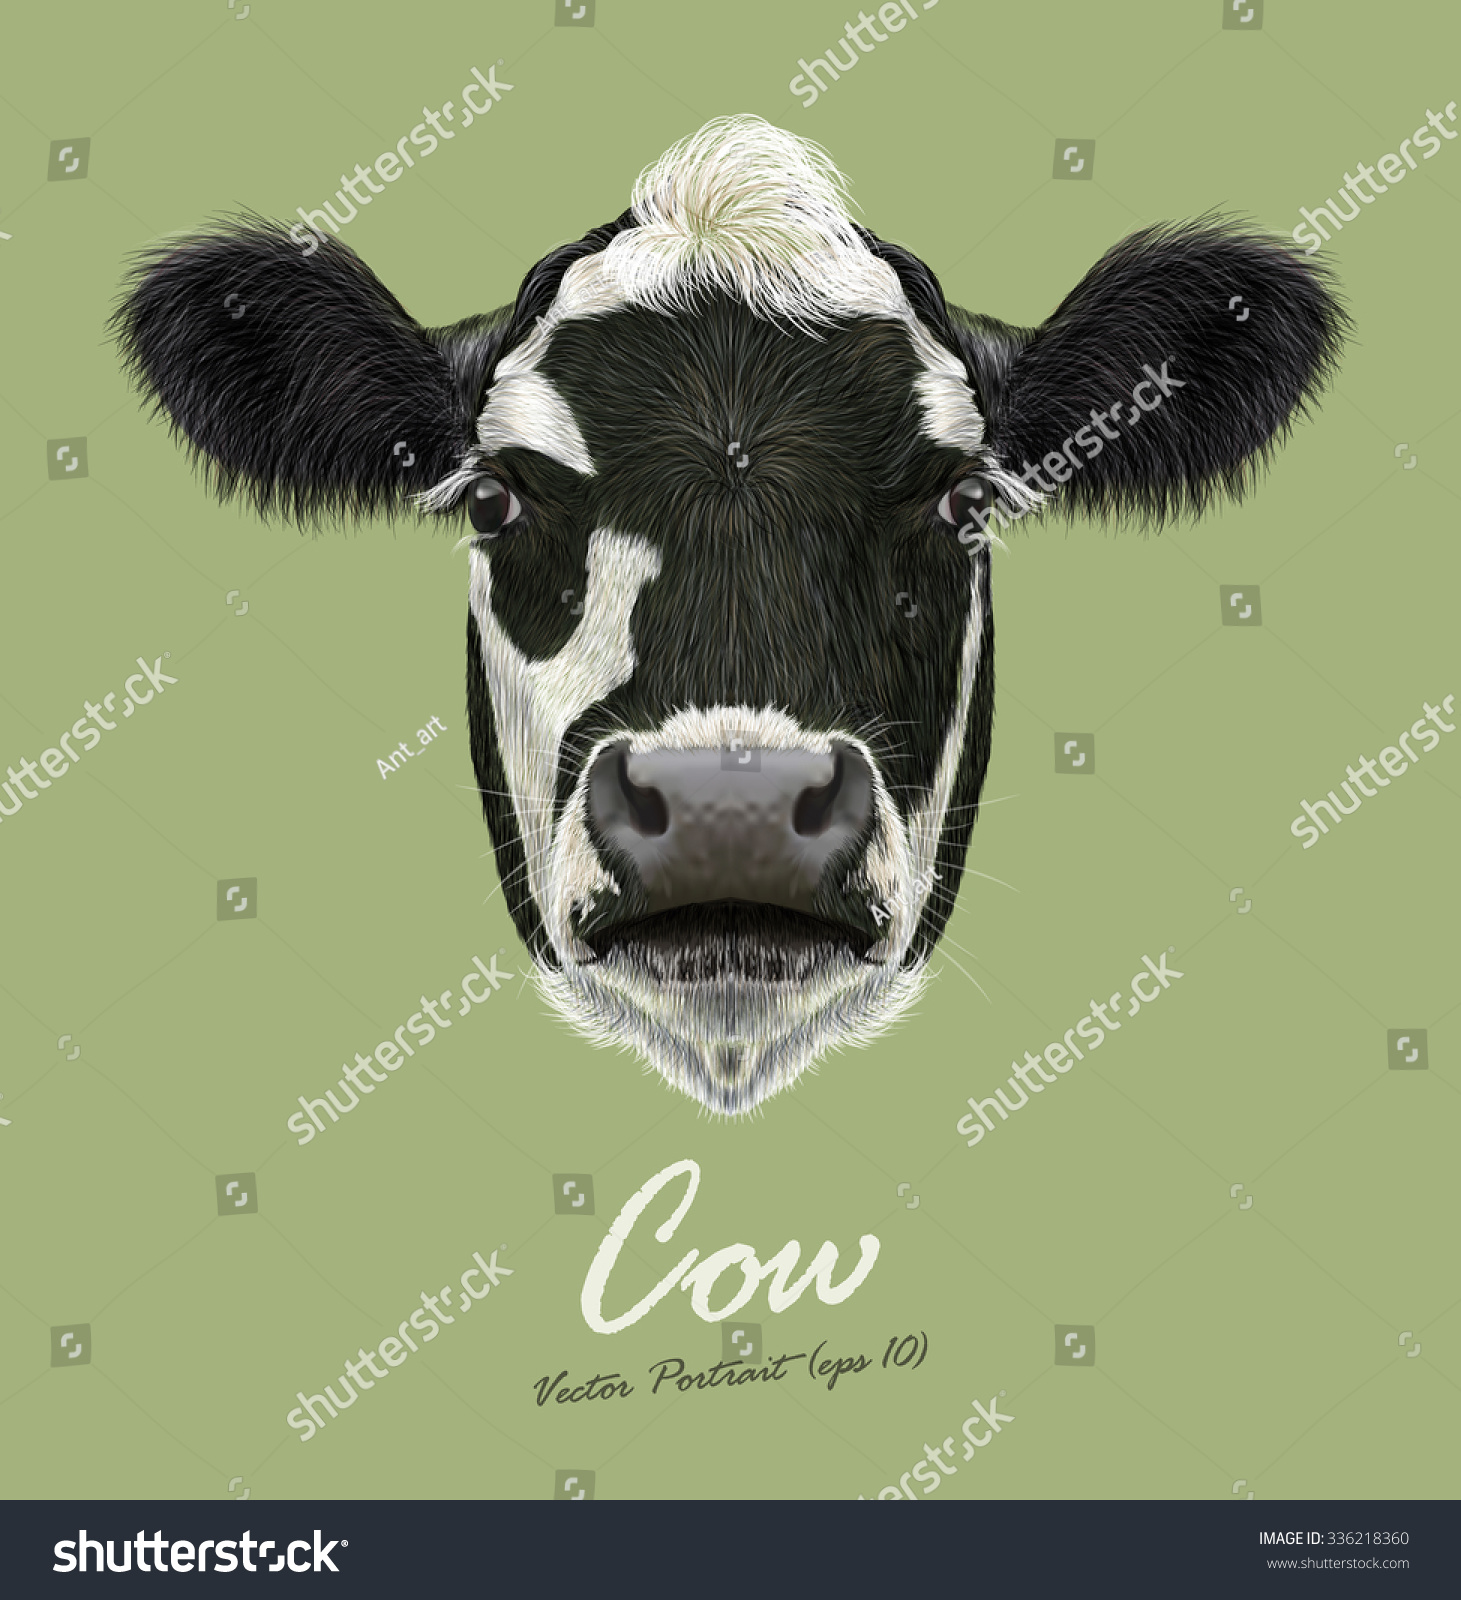 ウシ畑の動物の顔 ベクター画像のかわいい牛の頭のポートレート 緑の背景に白黒の斑点のある子牛のリアルな毛皮のポートレート のベクター画像素材 ロイヤリティフリー